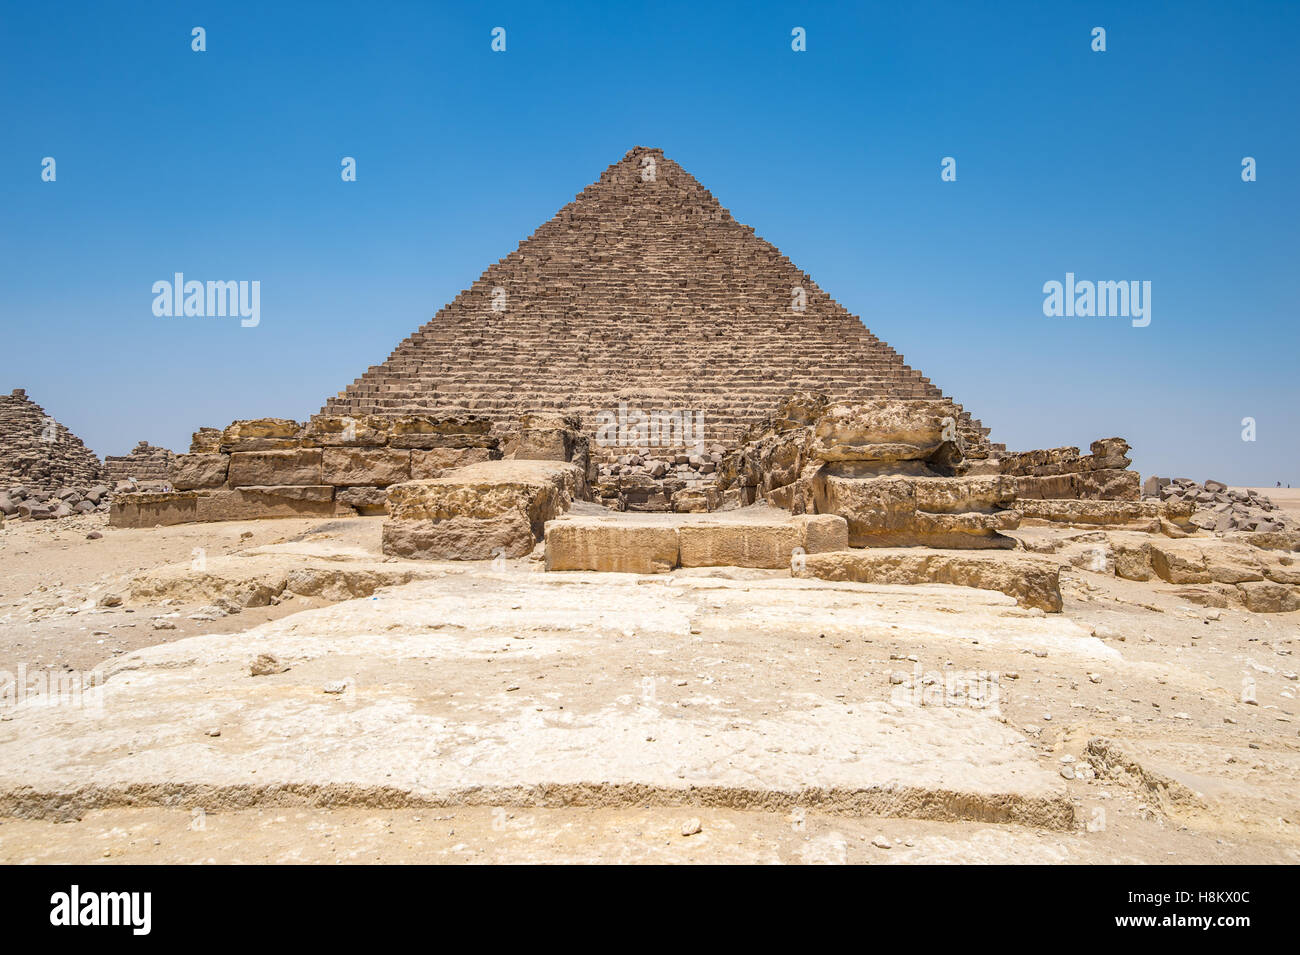 El Cairo, Egipto, una de las grandes pirámides de Giza contra un cielo azul claro. Esta es la Pirámide de Mekaure, el smal Foto de stock